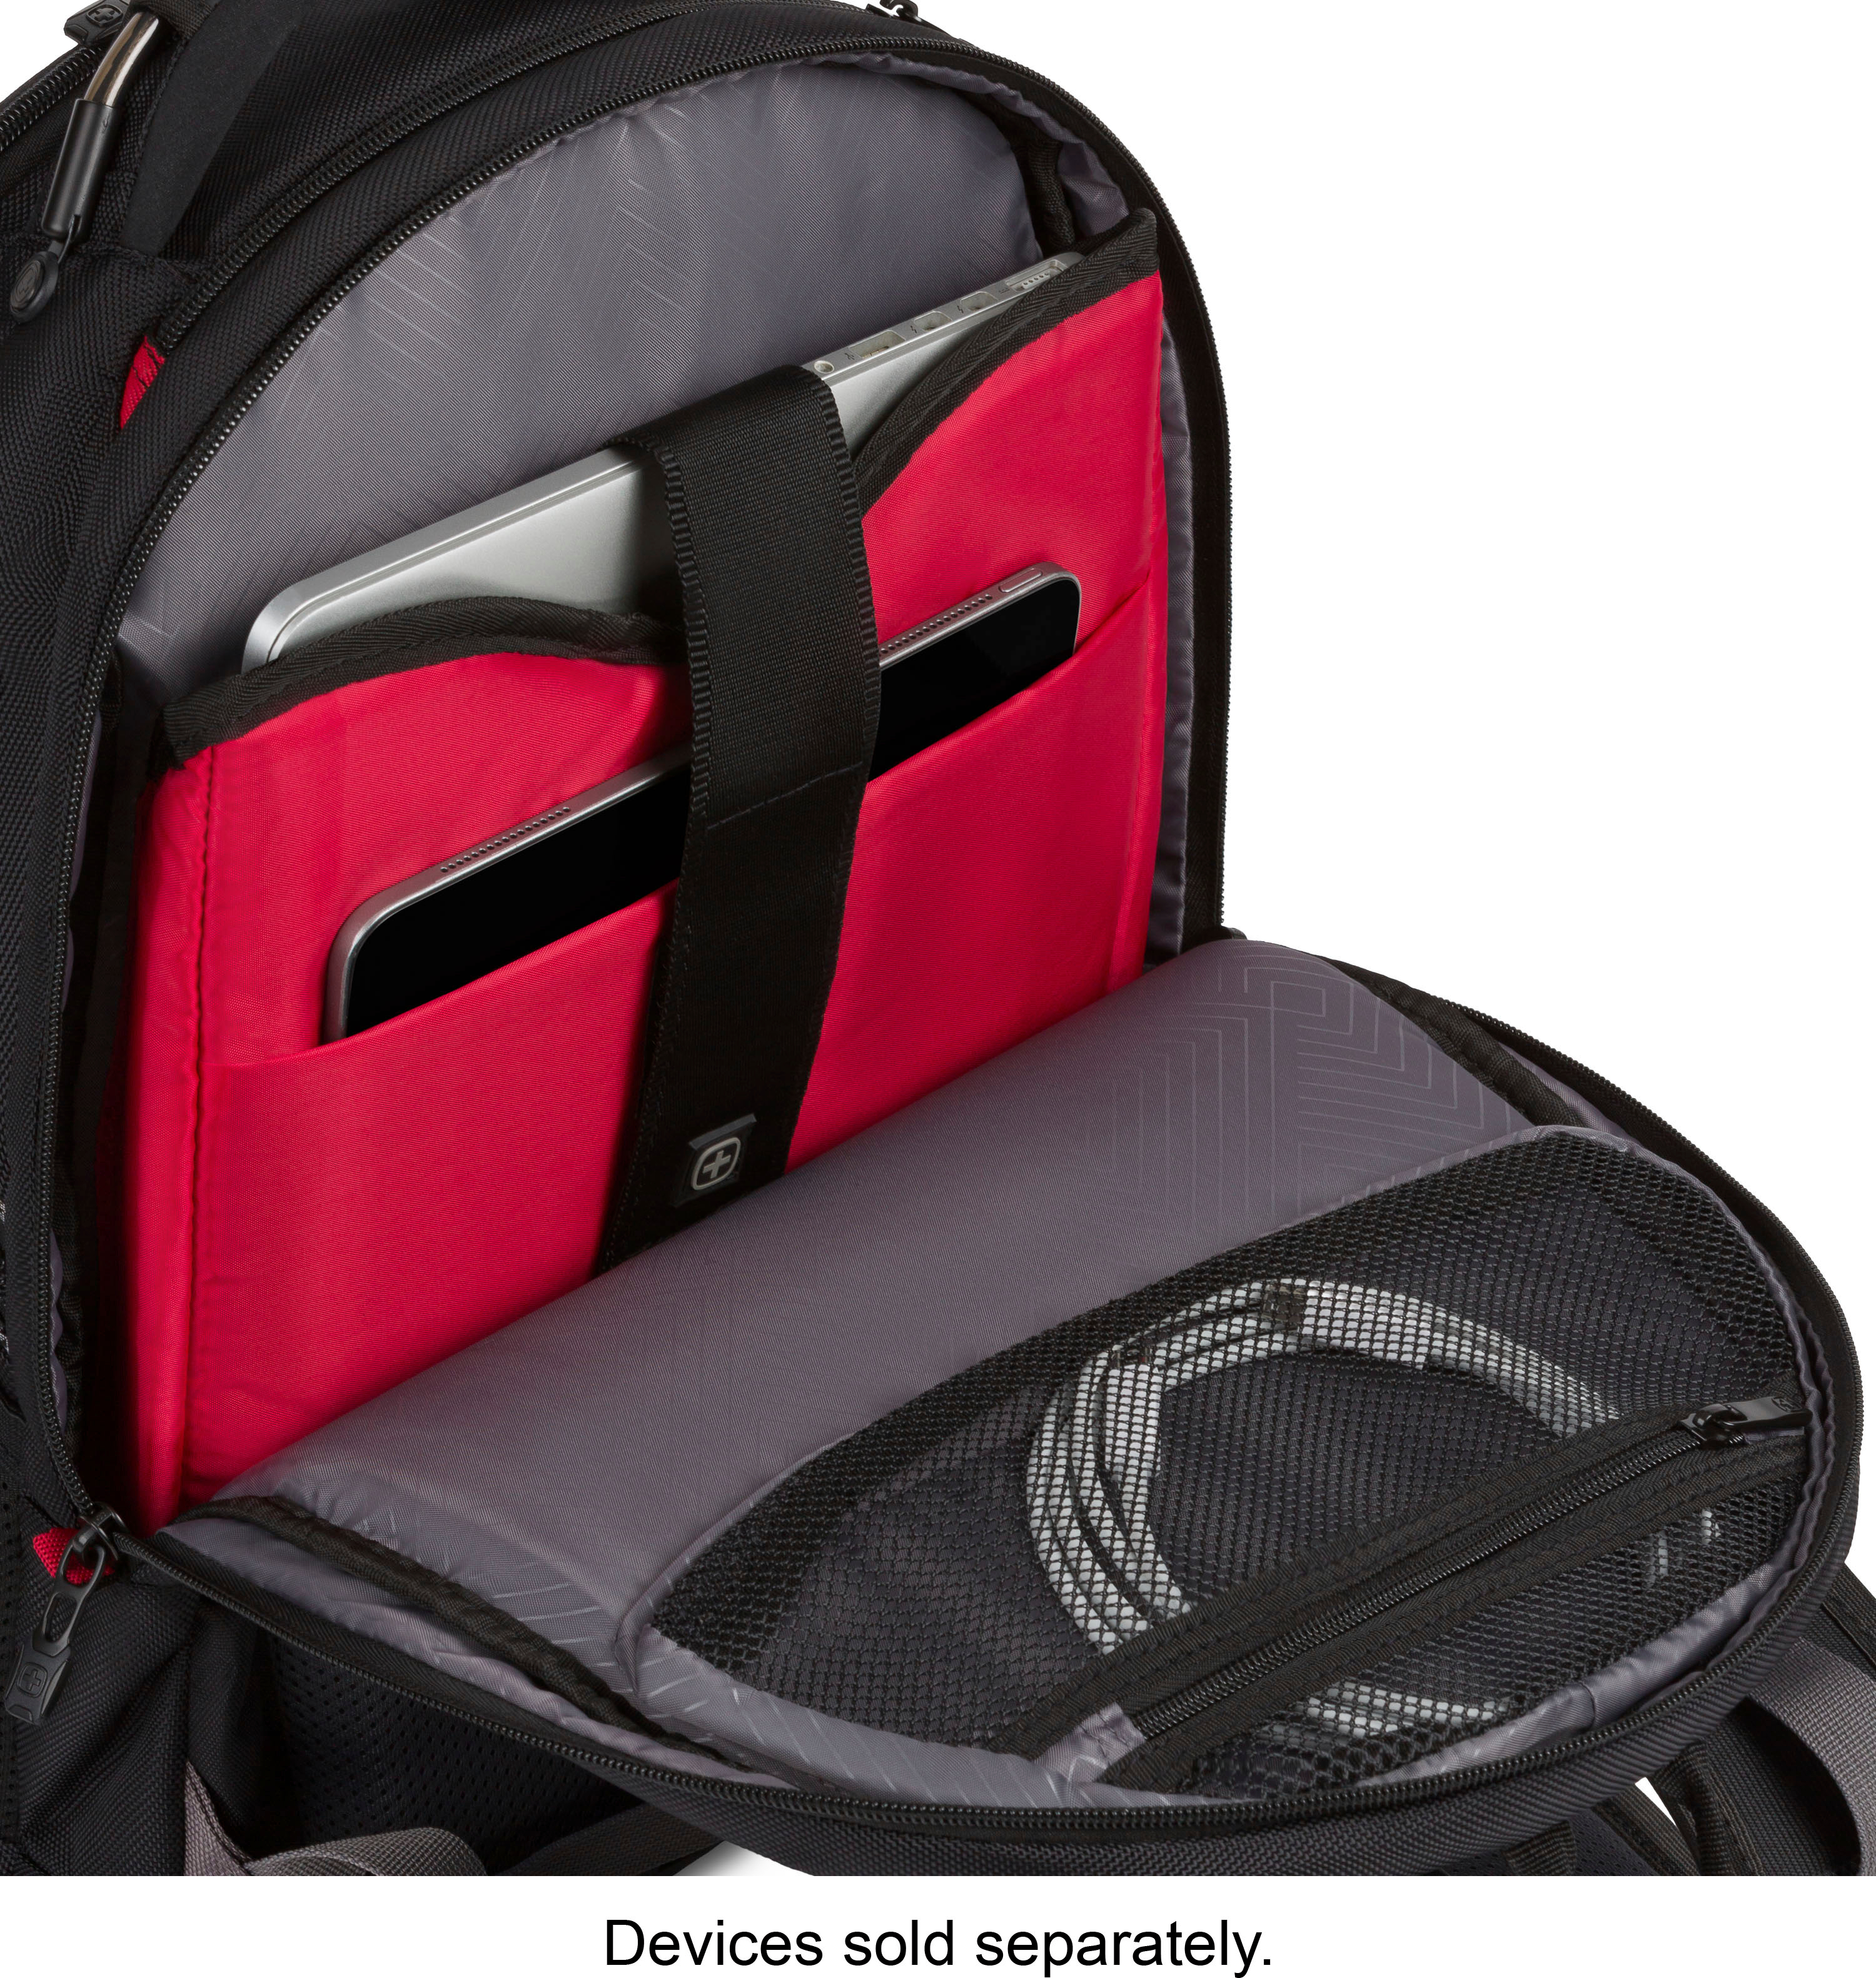 SwissGear Synergy Backpack for 16 Laptop Black/Gray 27305140/5203204416 -  Best Buy